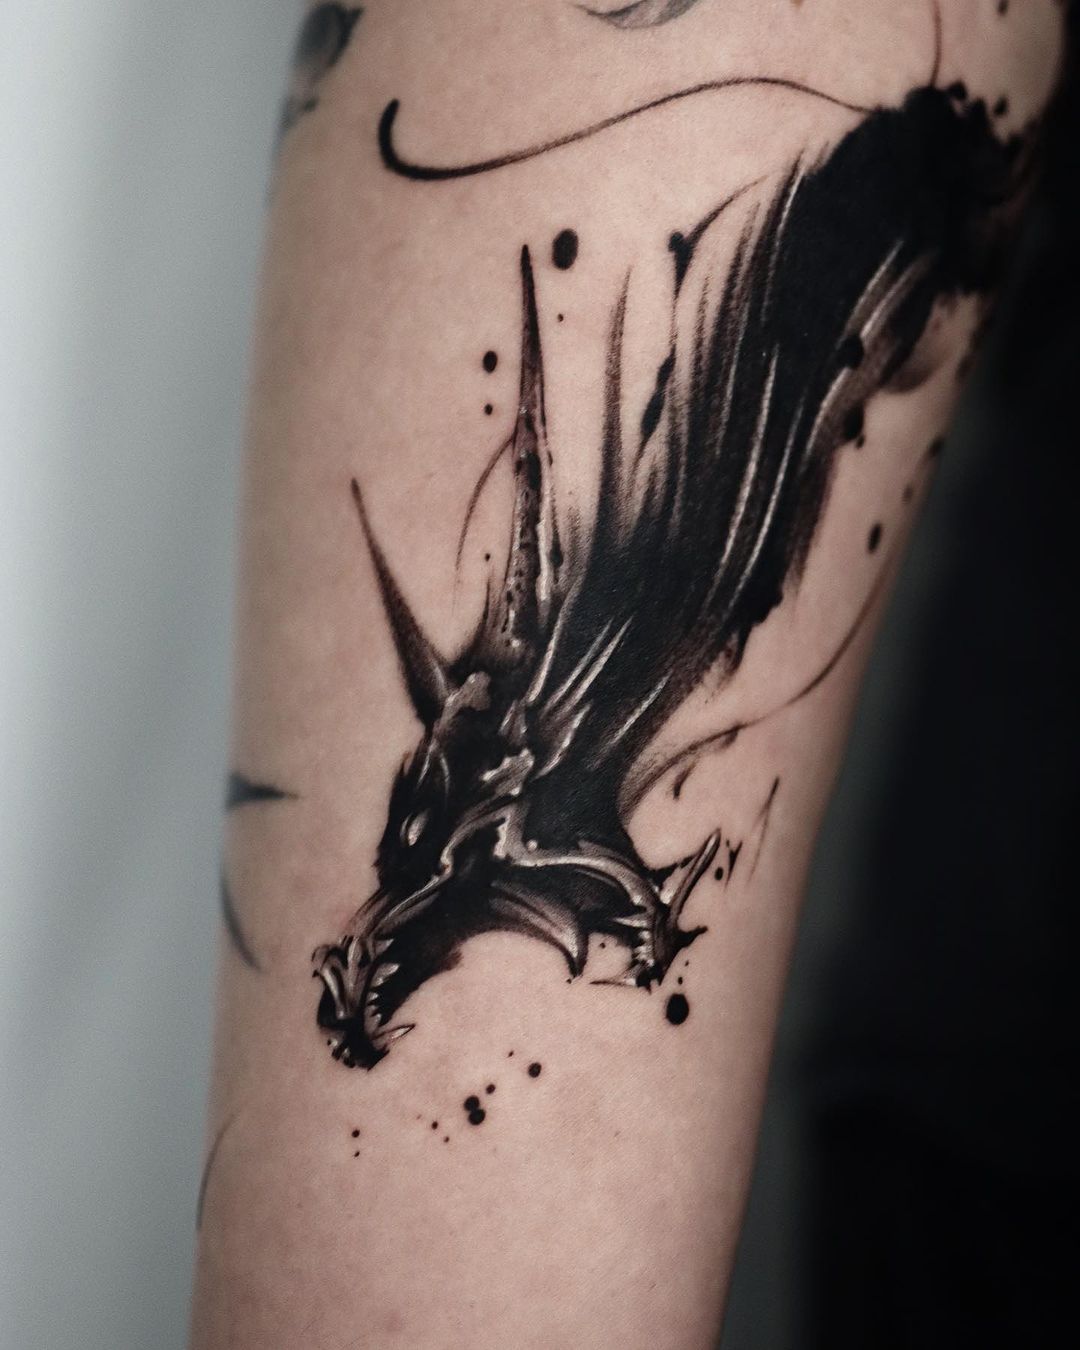 Dragon tattoo design by tattooist mate